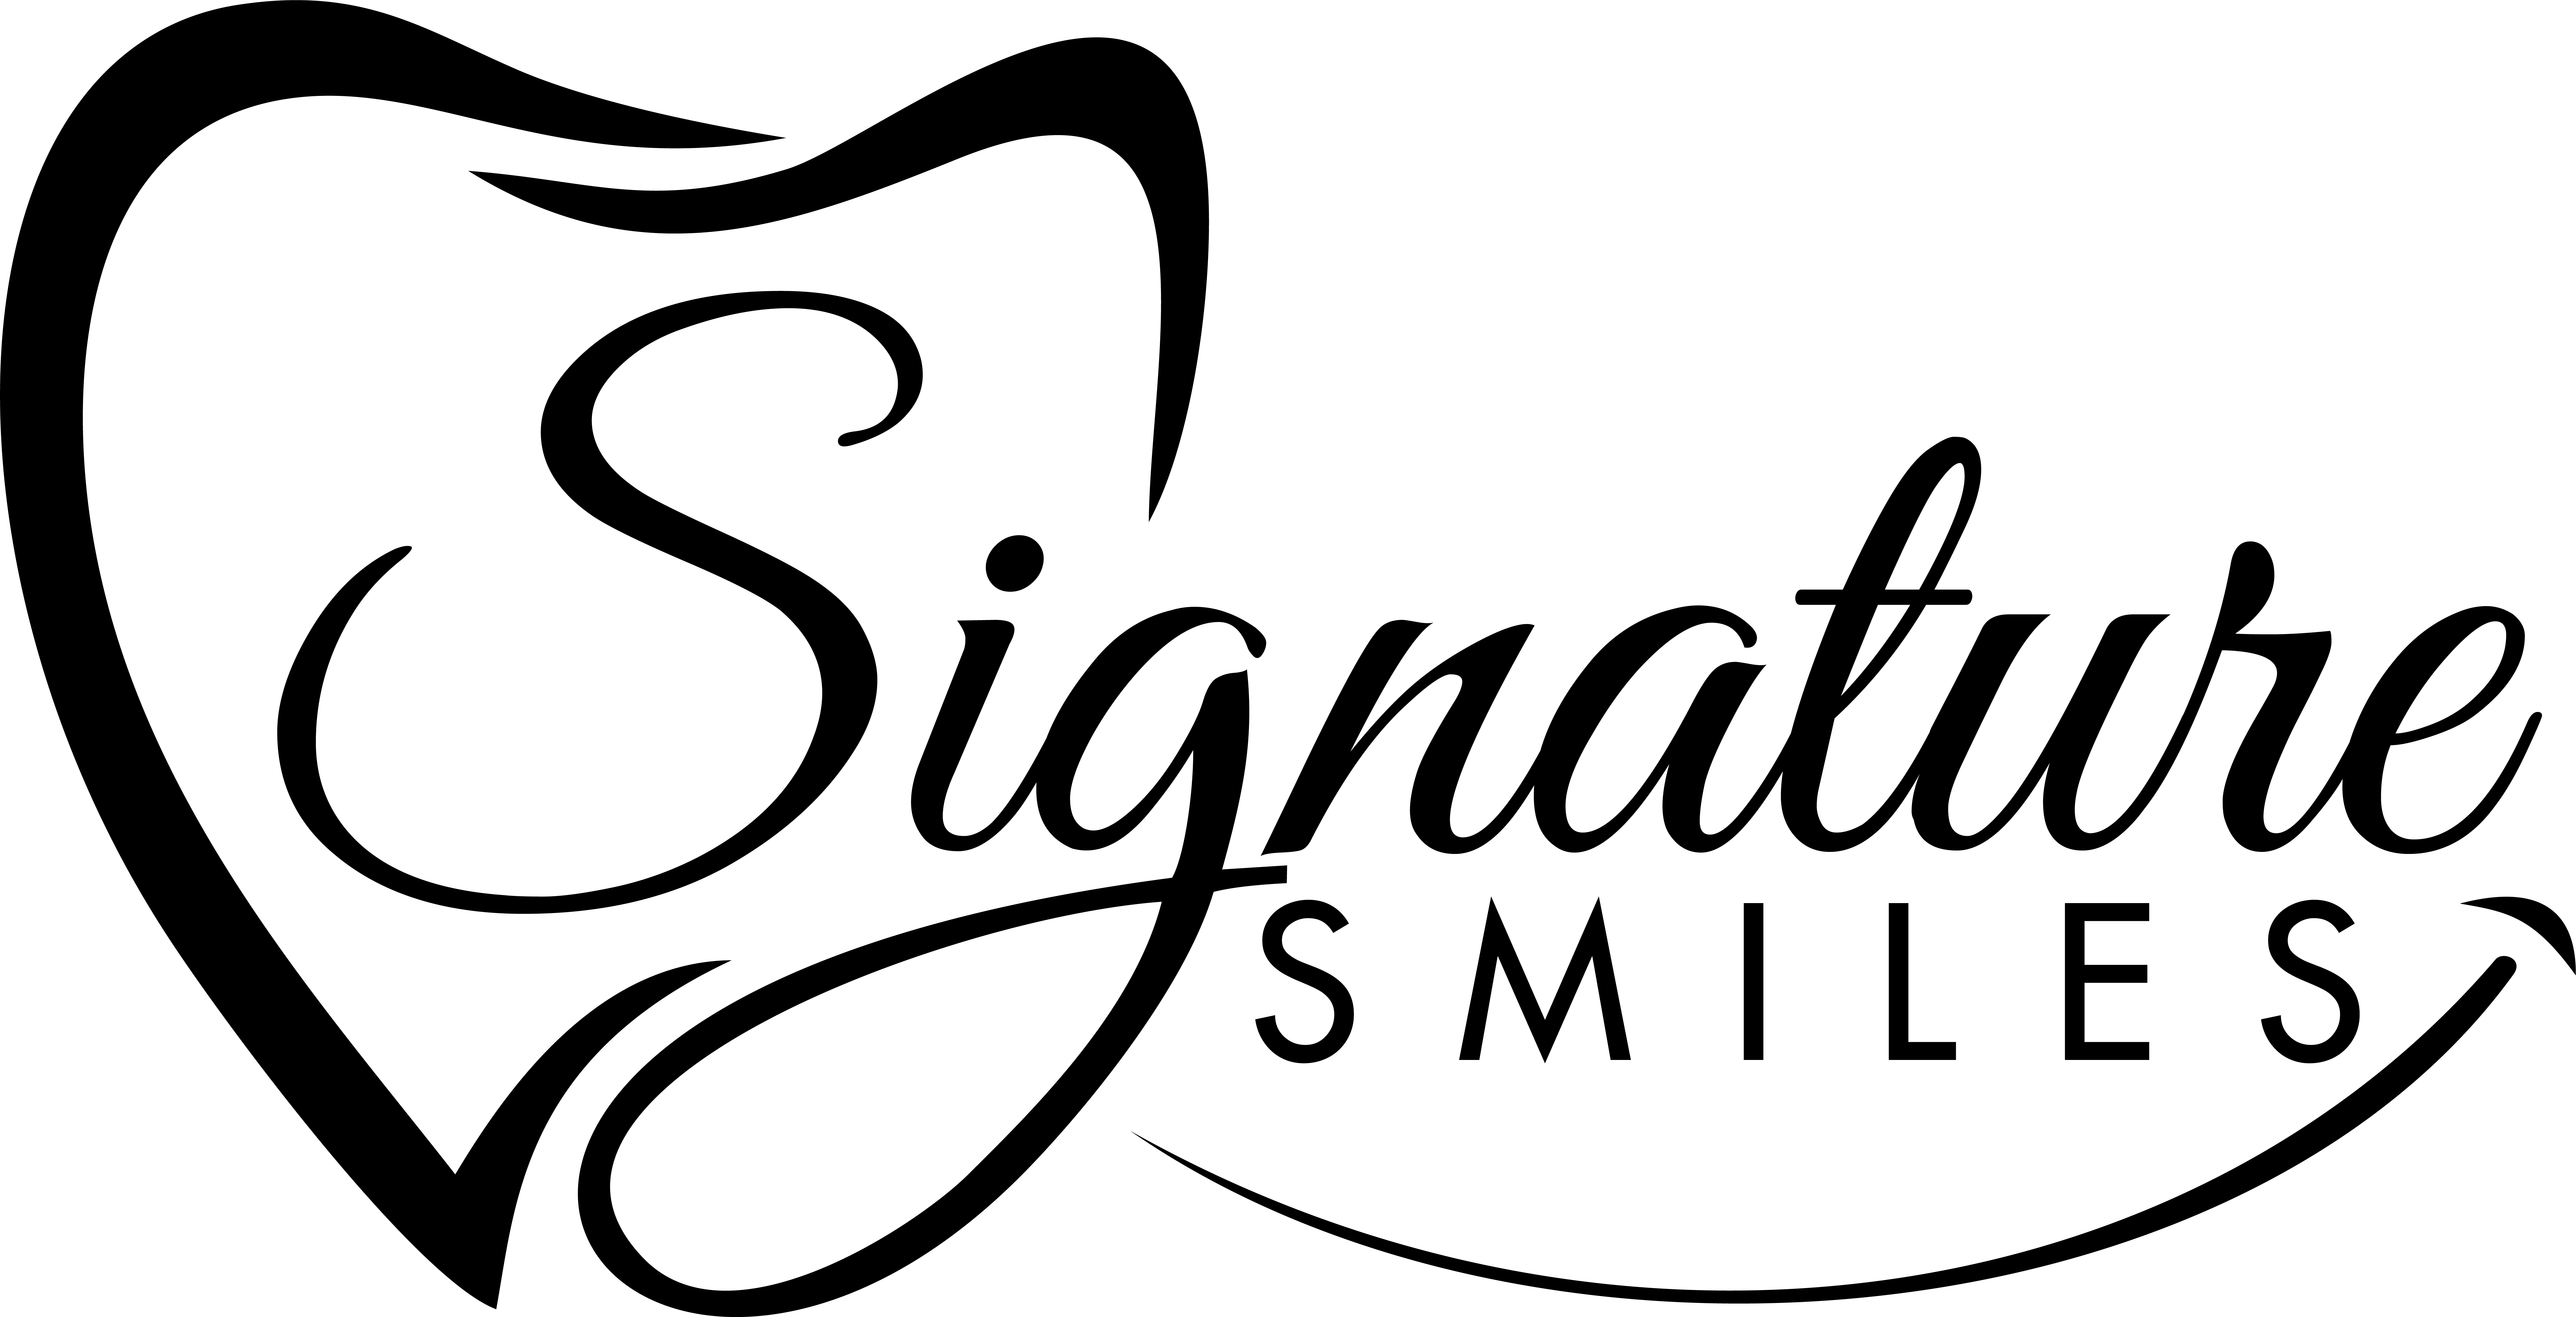 1a. Signature Smiles (Platinum)